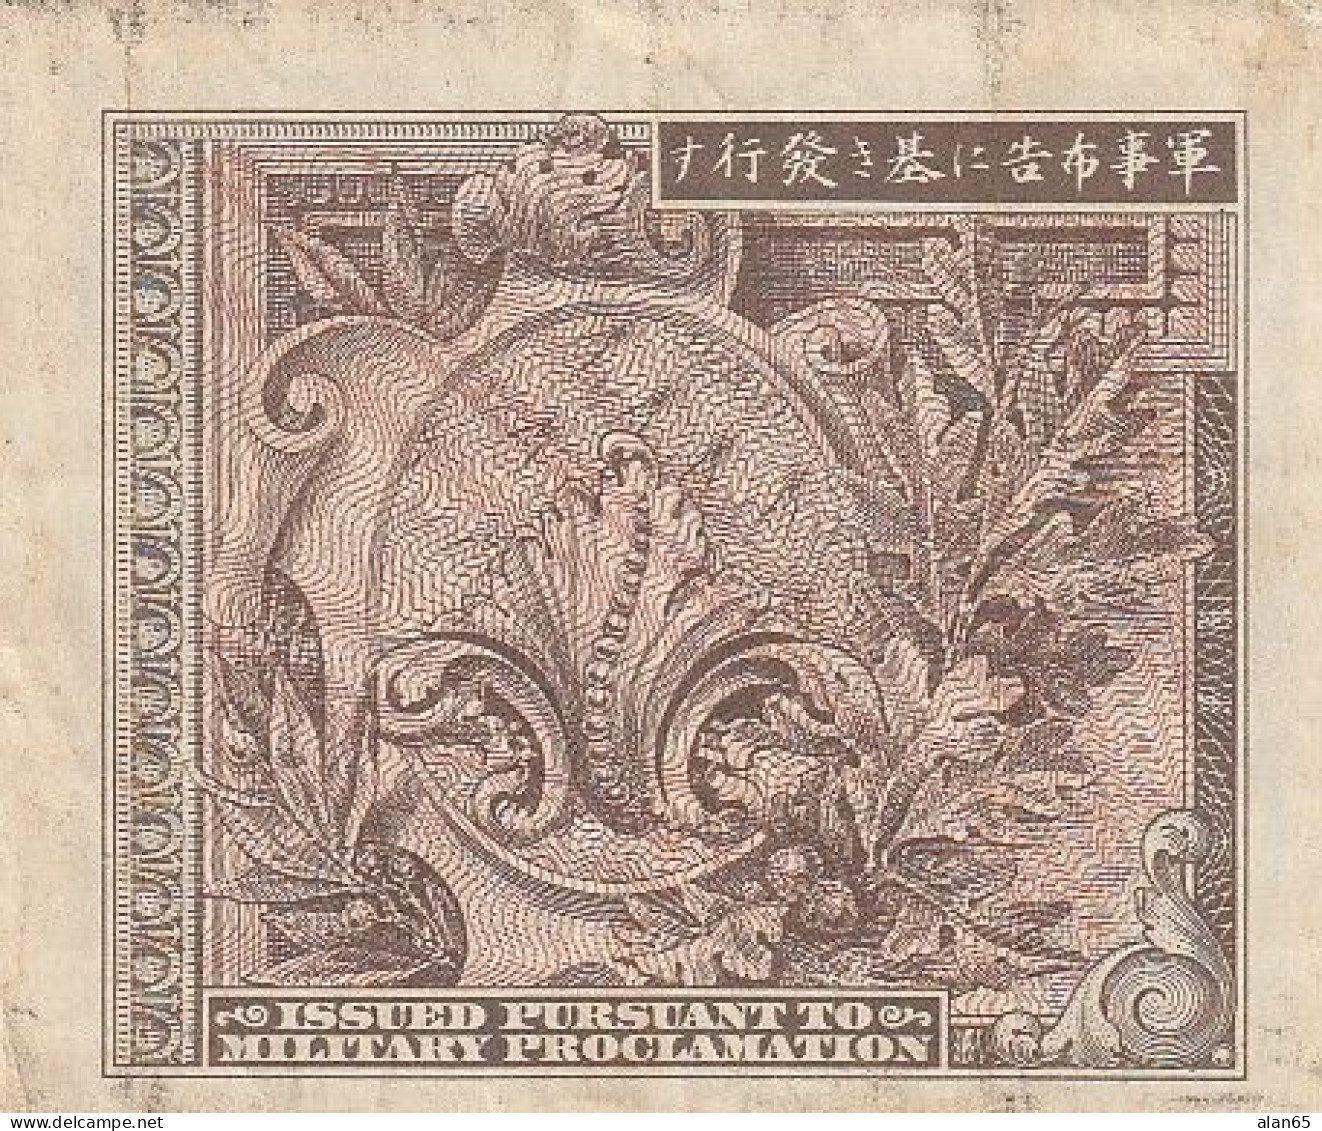 Japan #67a, 1 Yen 1945 Banknote - Japon